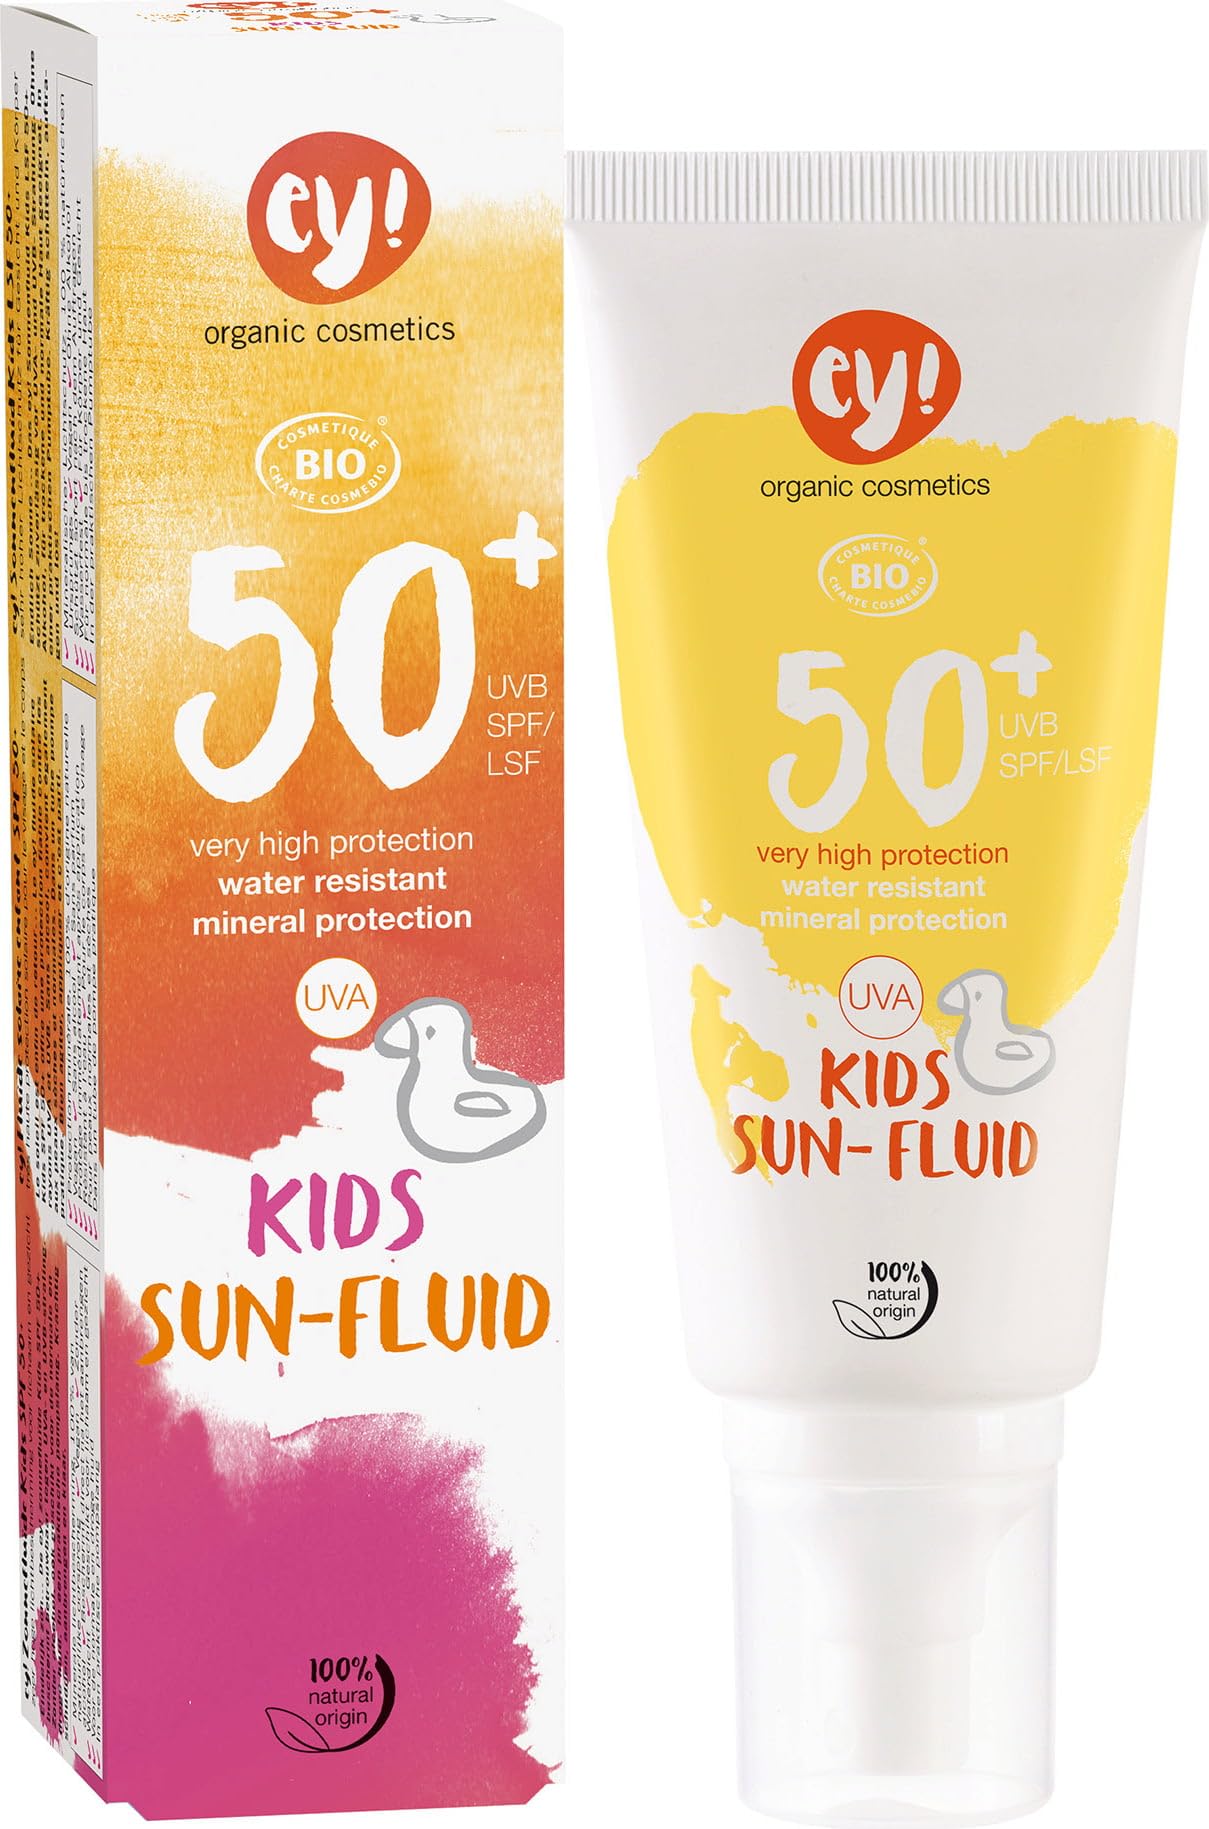 ey! organic cosmetics Sunfluid KIDS Sonnenfluid LSF 50+ wasserfest, vegan, ohne Mikroplastik, Naturkosmetik für Gesicht und Körper, 1er Pack (1 x 100ml)